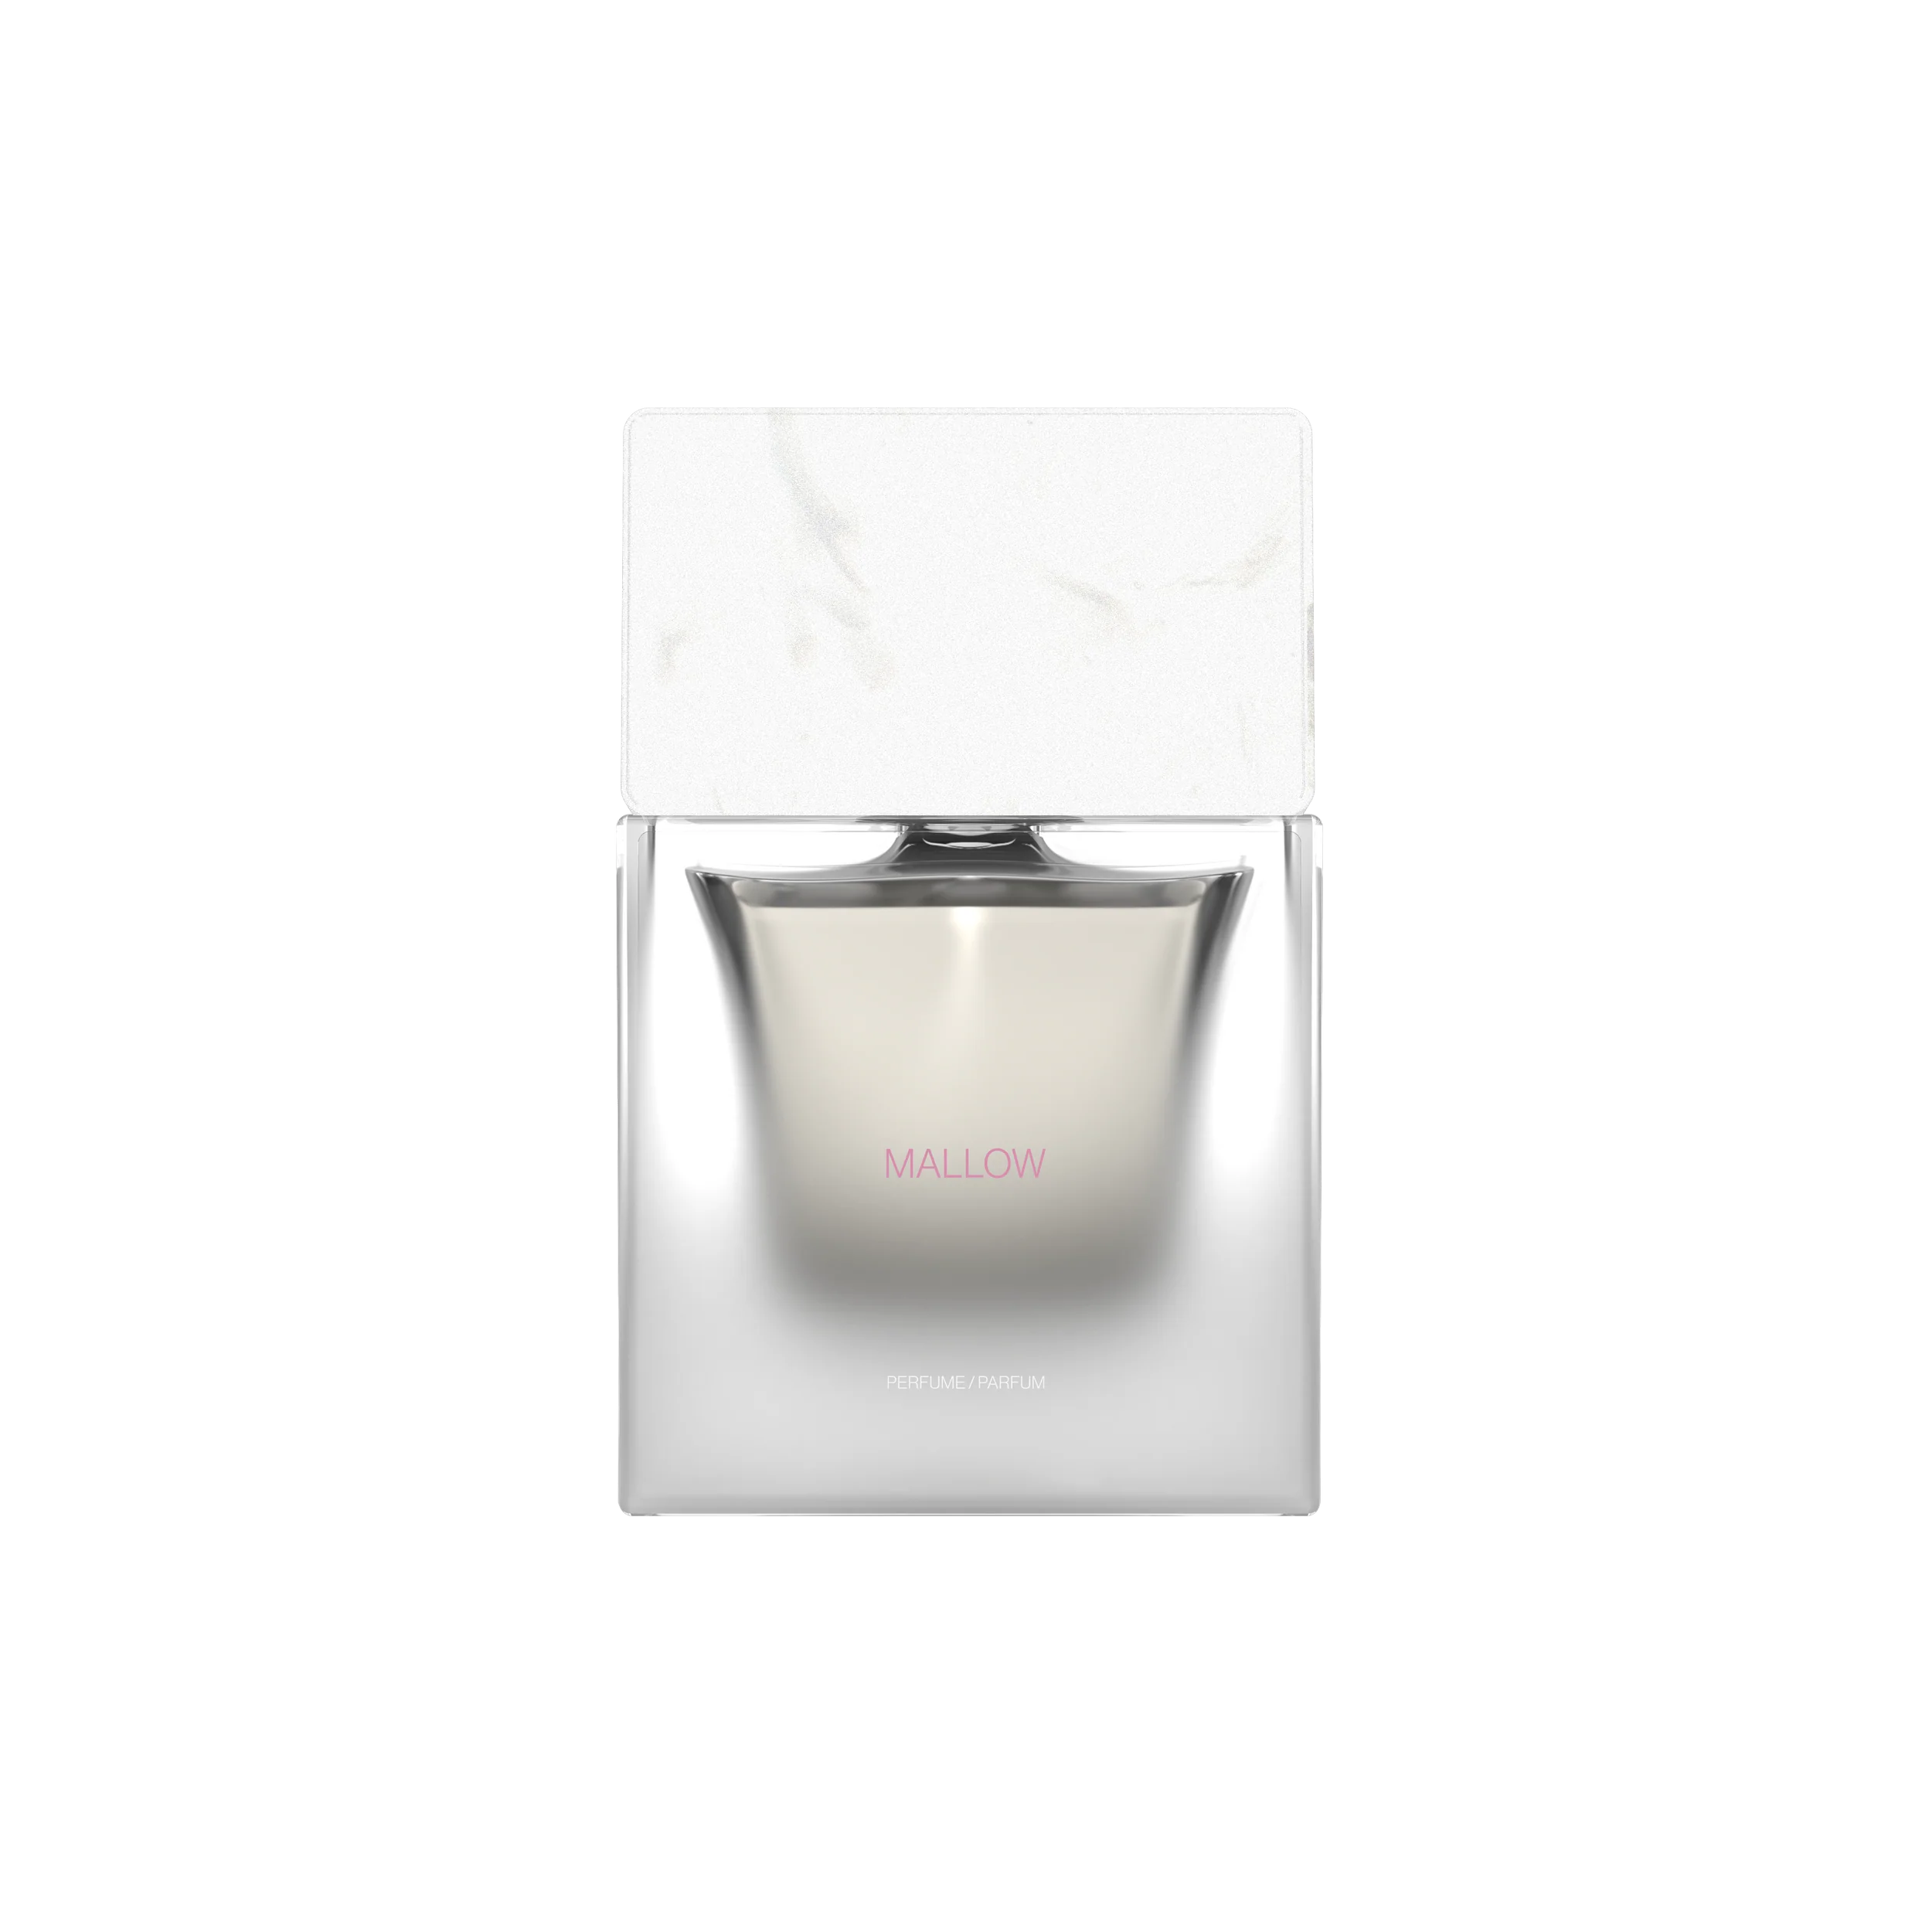 SORADORA Mallow 50ml / 1.7 fl oz Perfume Extract